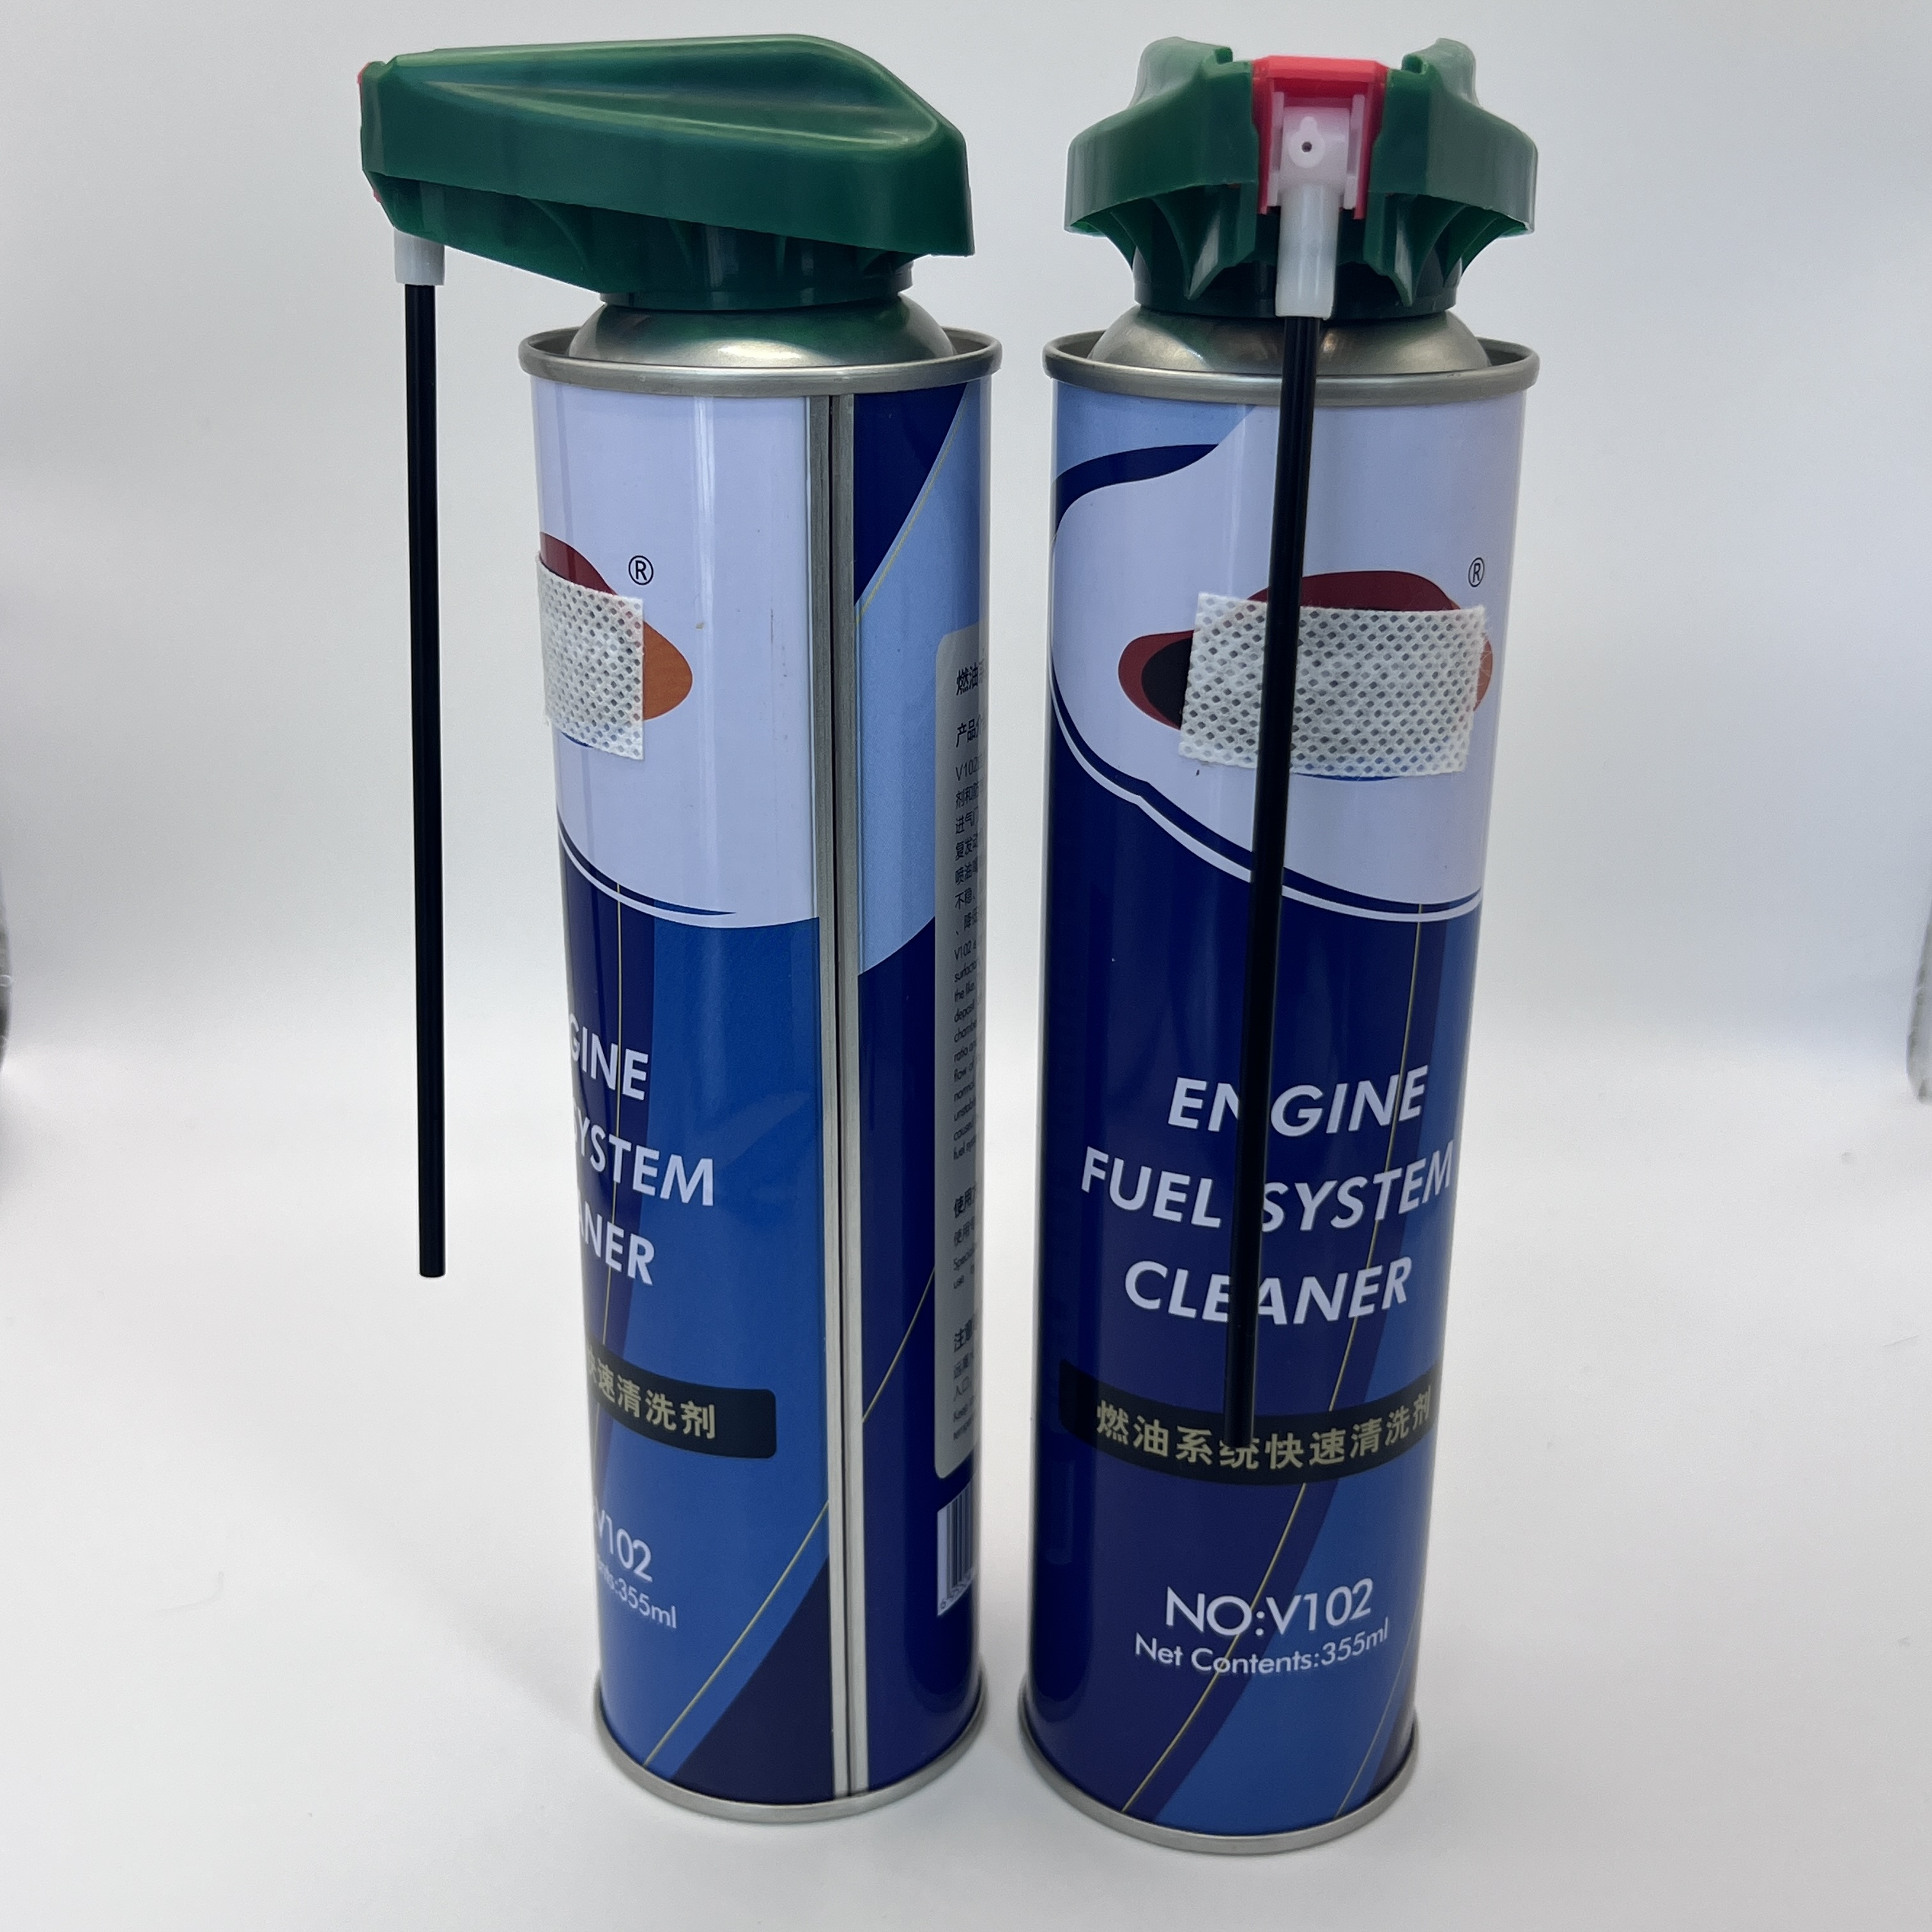 Kompaktiškas dujų kasetės paleidiklis stovyklavimui ir maisto ruošimui lauke – nešiojamas ir patikimas